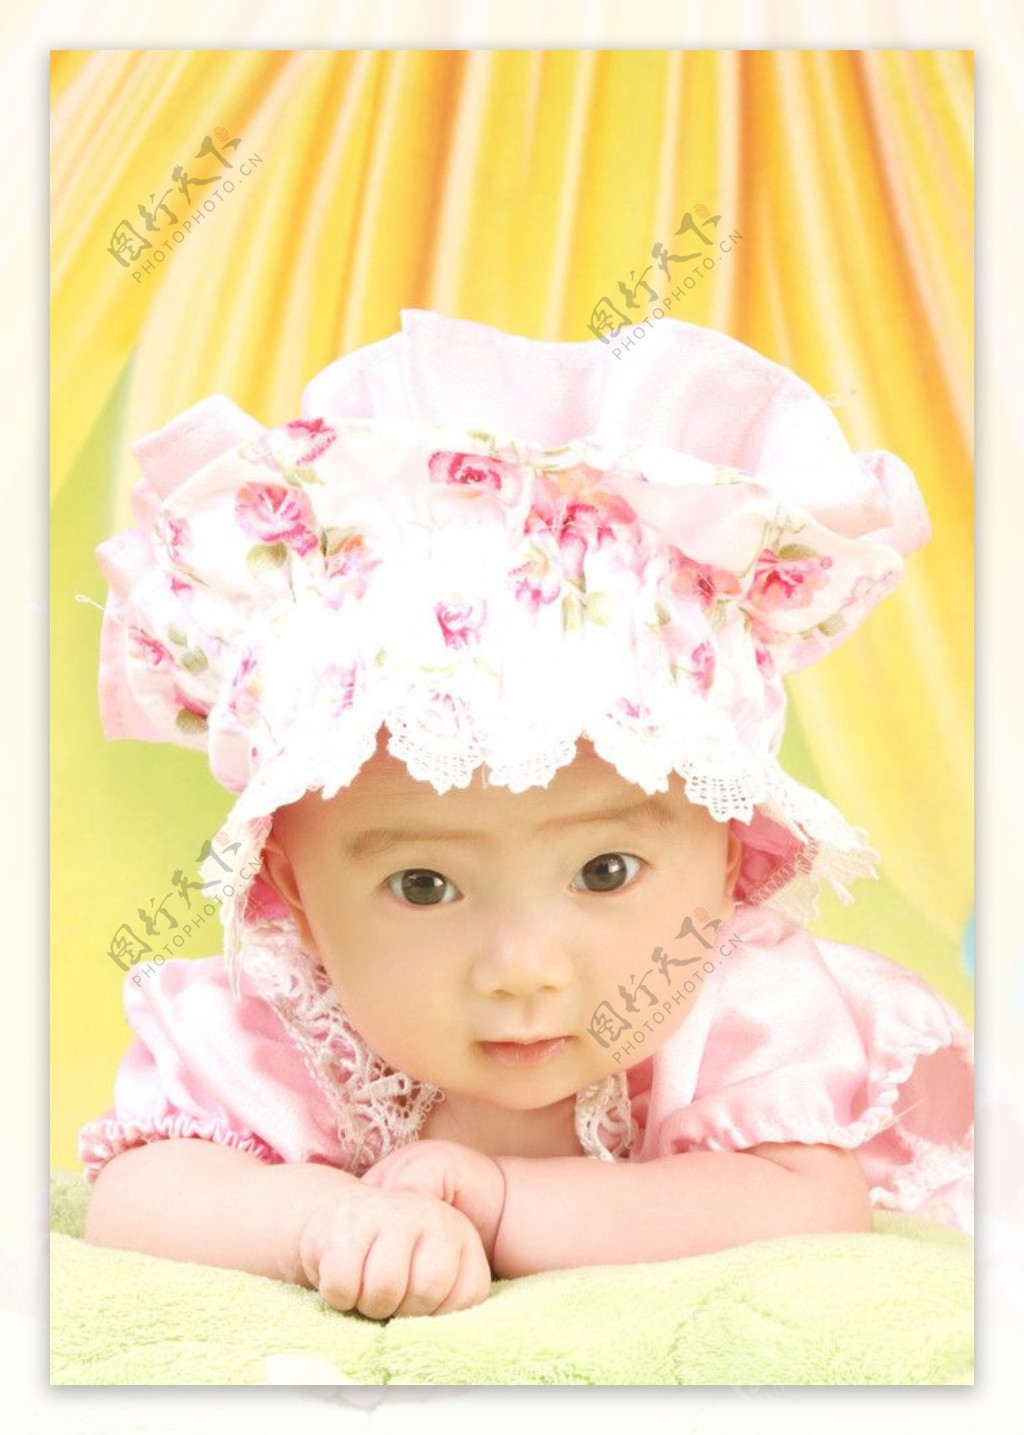 壁纸1400×1050可爱婴儿摄影 哭泣的小女孩图片壁纸壁纸,爱与纯真-可爱婴儿儿童摄影壁纸壁纸图片-摄影壁纸-摄影图片素材-桌面壁纸